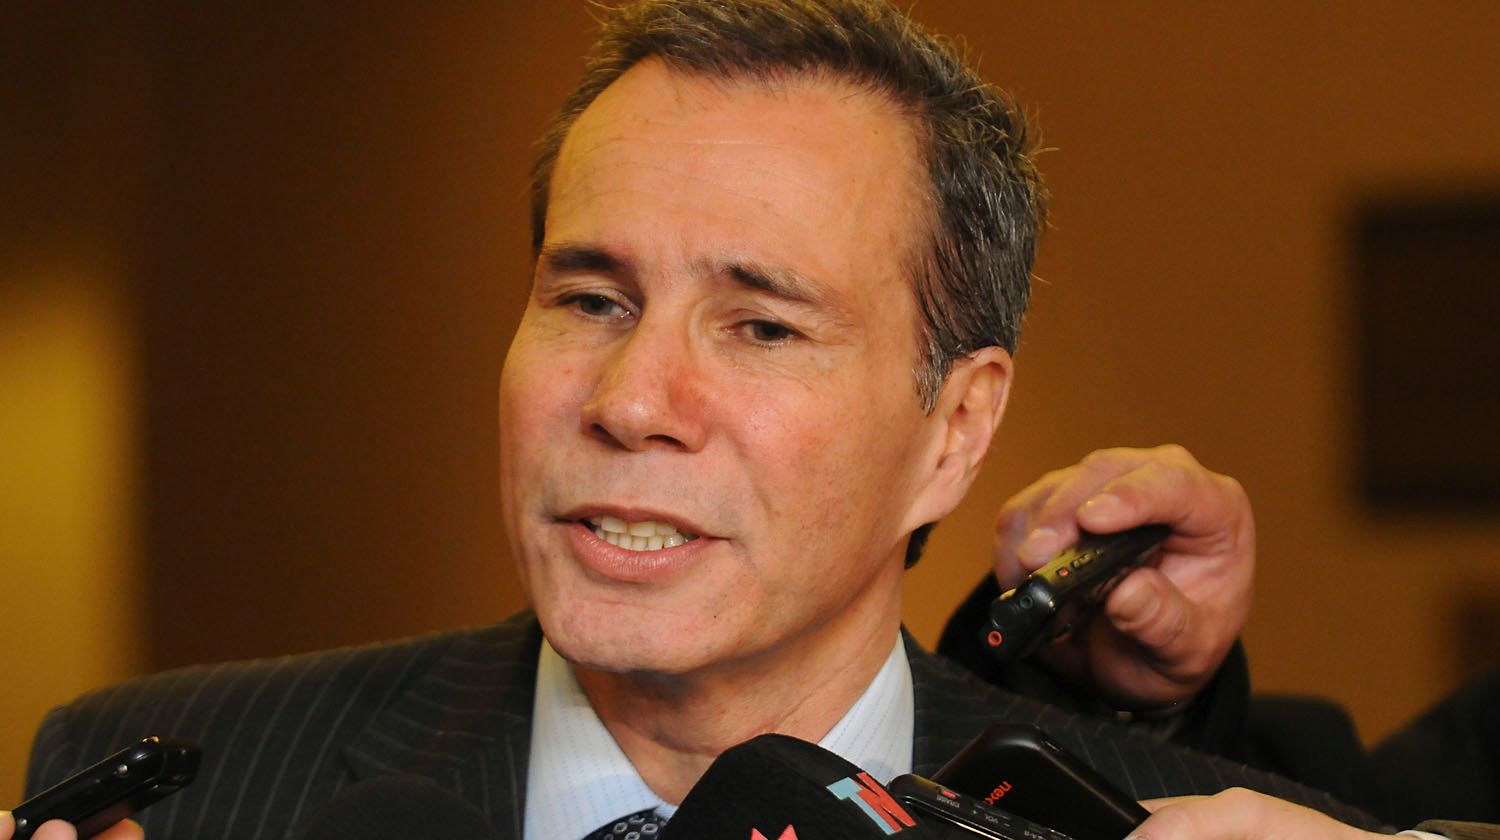 Muerte de Nisman: Según informe preliminar, no hubo intervención de terceros